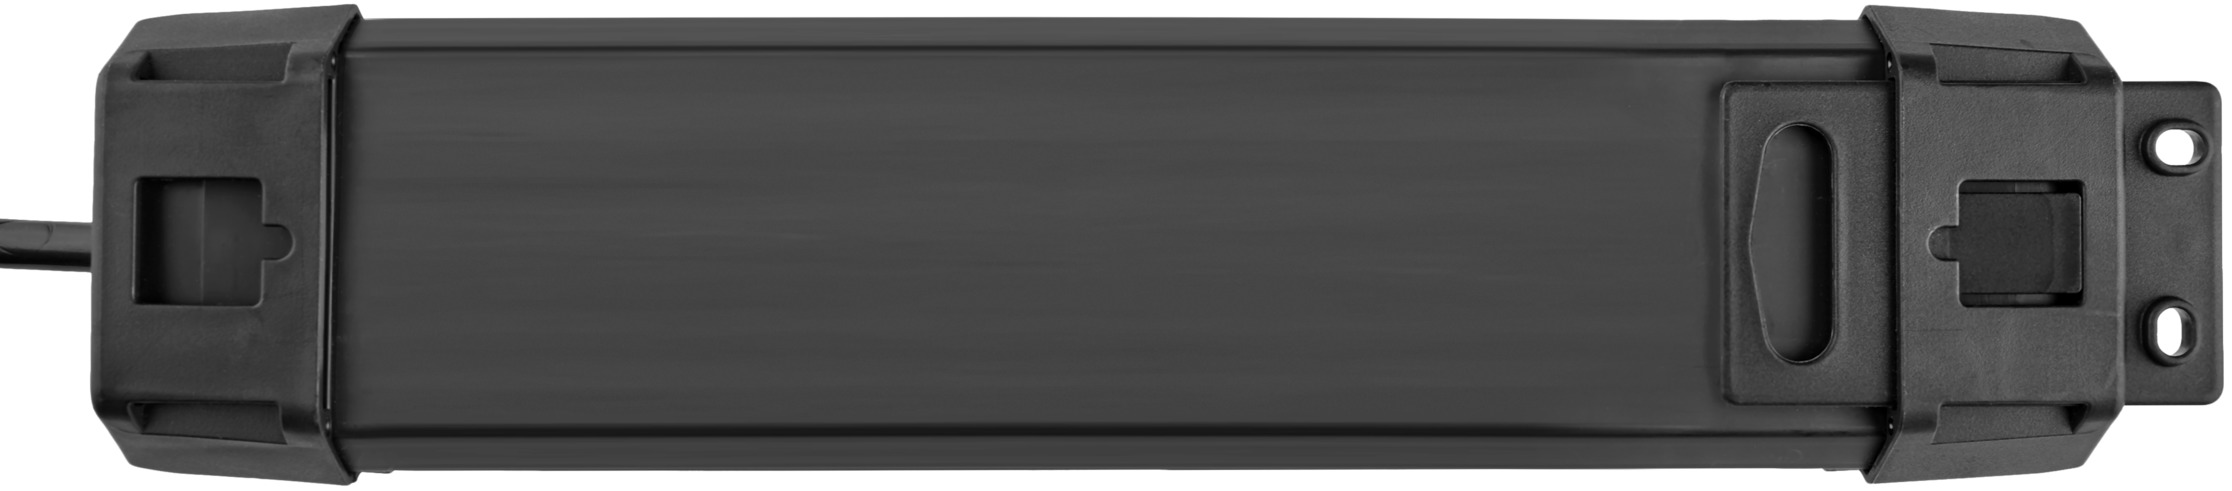 Premium-Line 4-fach Steckdosenleiste Schalter 1,8m Kabel schwarz